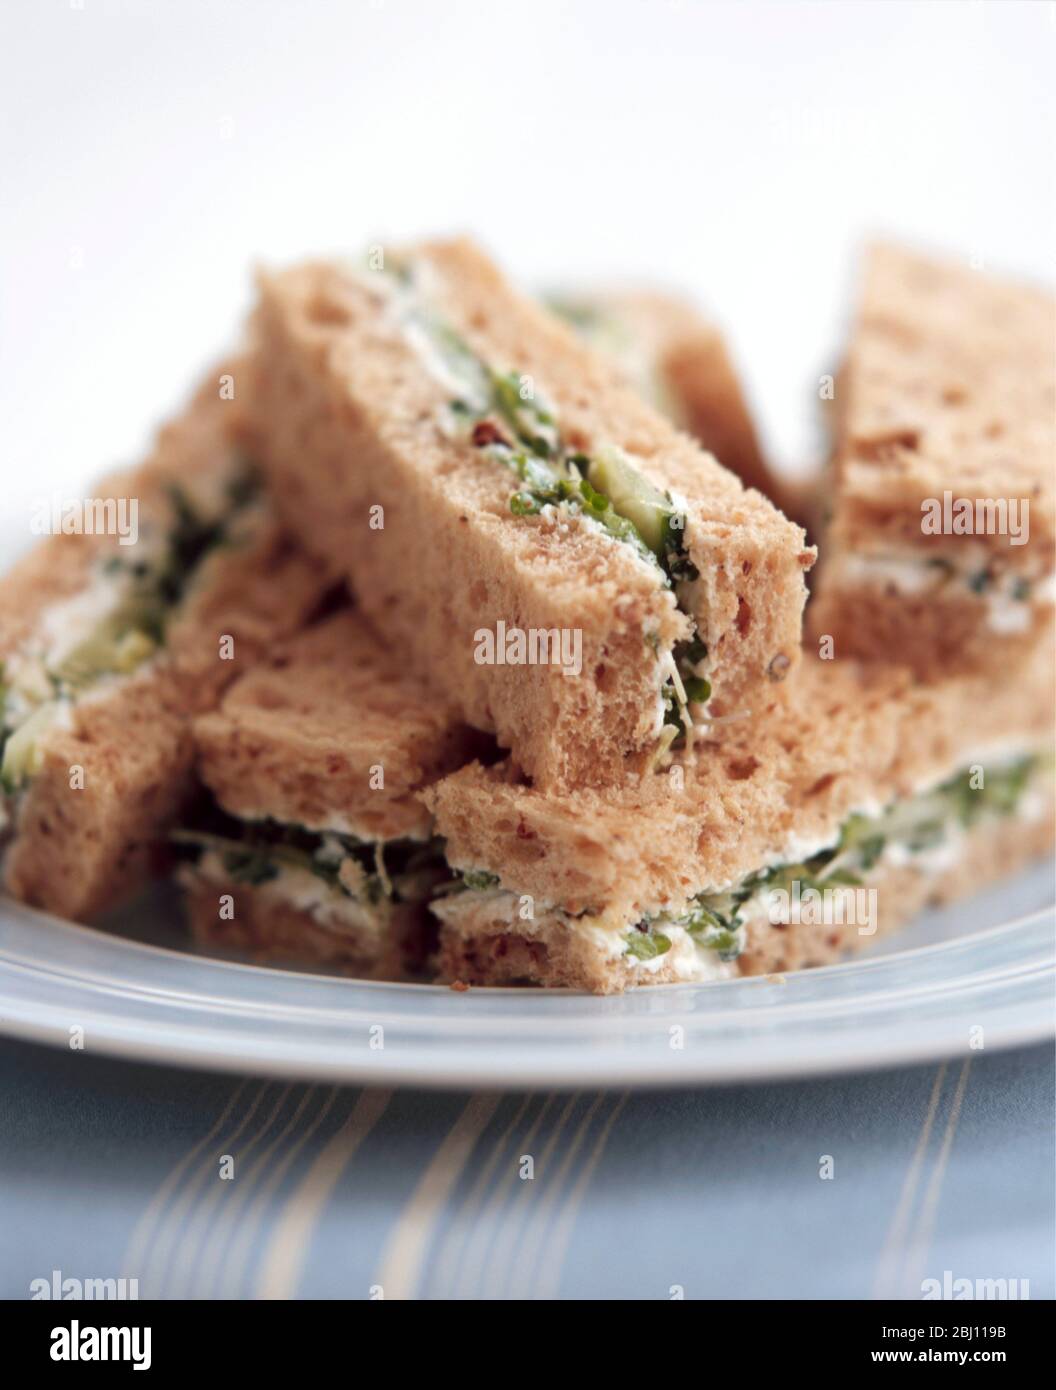 Kleine Sandwiches aus braunem Brot, in Finger geschnitten mit Frischkäse, Gurke, Kresse und getrockneten Tomaten - Stockfoto